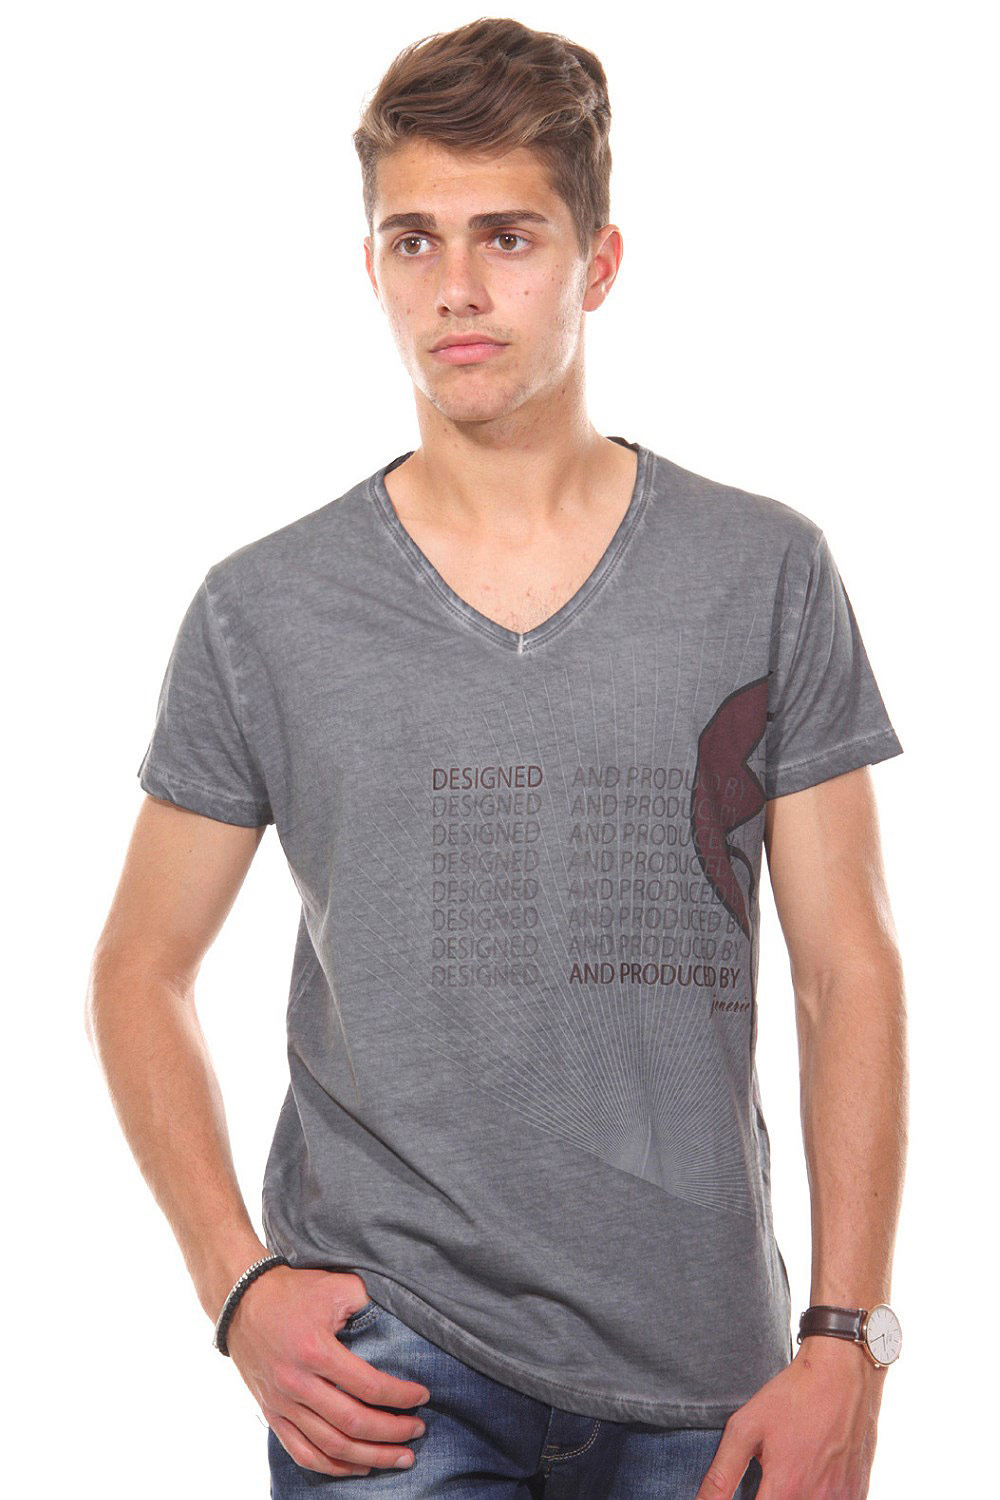 JENERIC T-Shirt V-Ausschnitt regular fit auf oboy.de